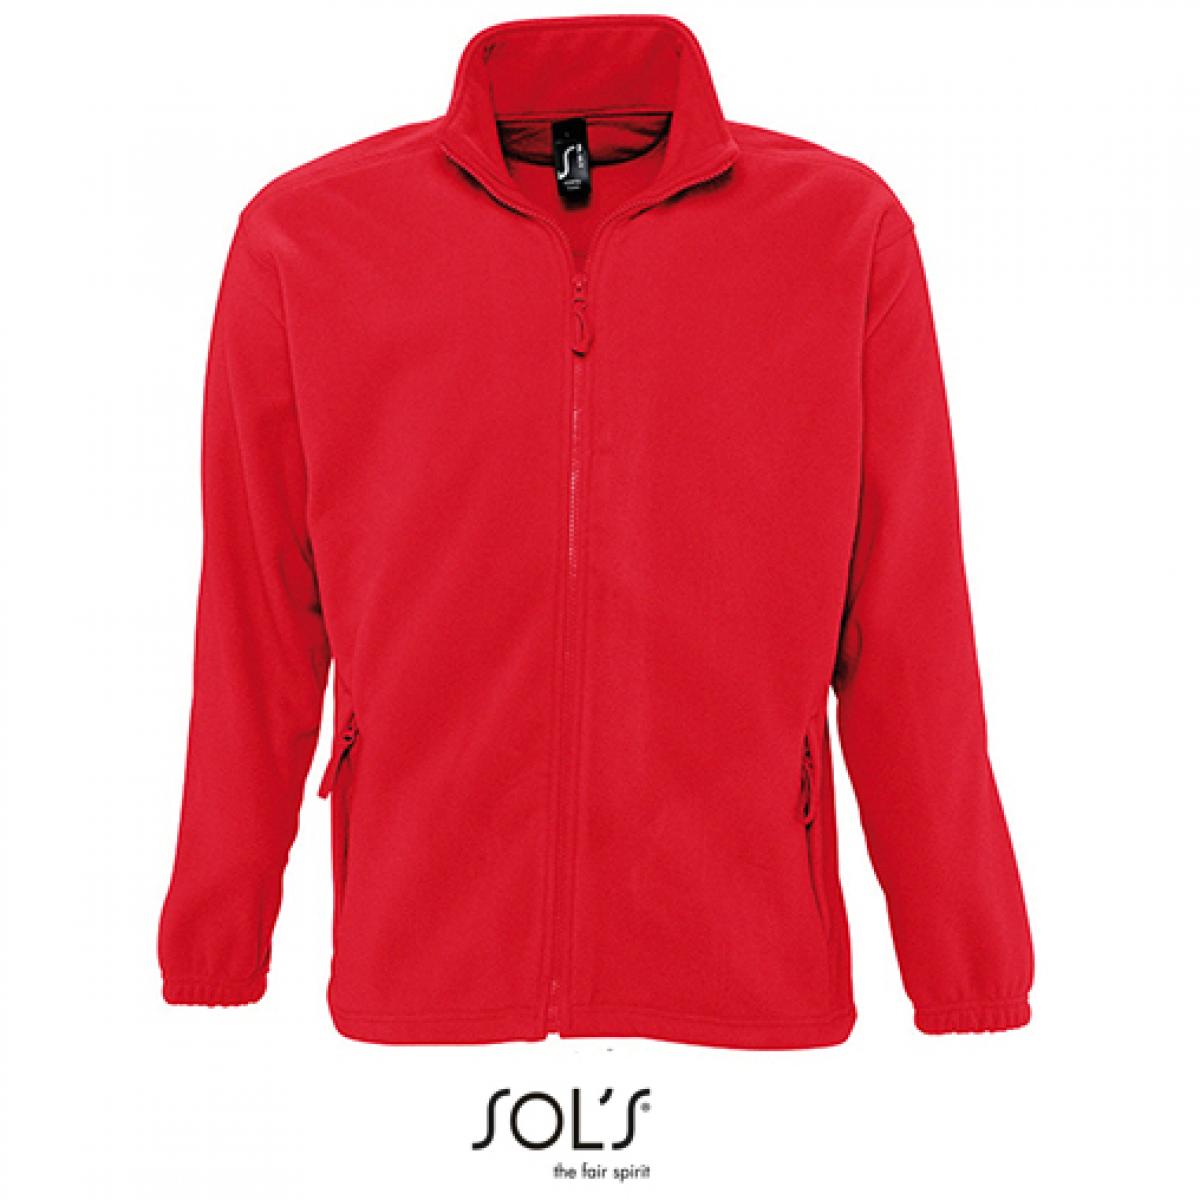 Hersteller: SOLs Herstellernummer: 55000 Artikelbezeichnung: Fleecejacket North / Herren Jacke bis 5XL Farbe: Red